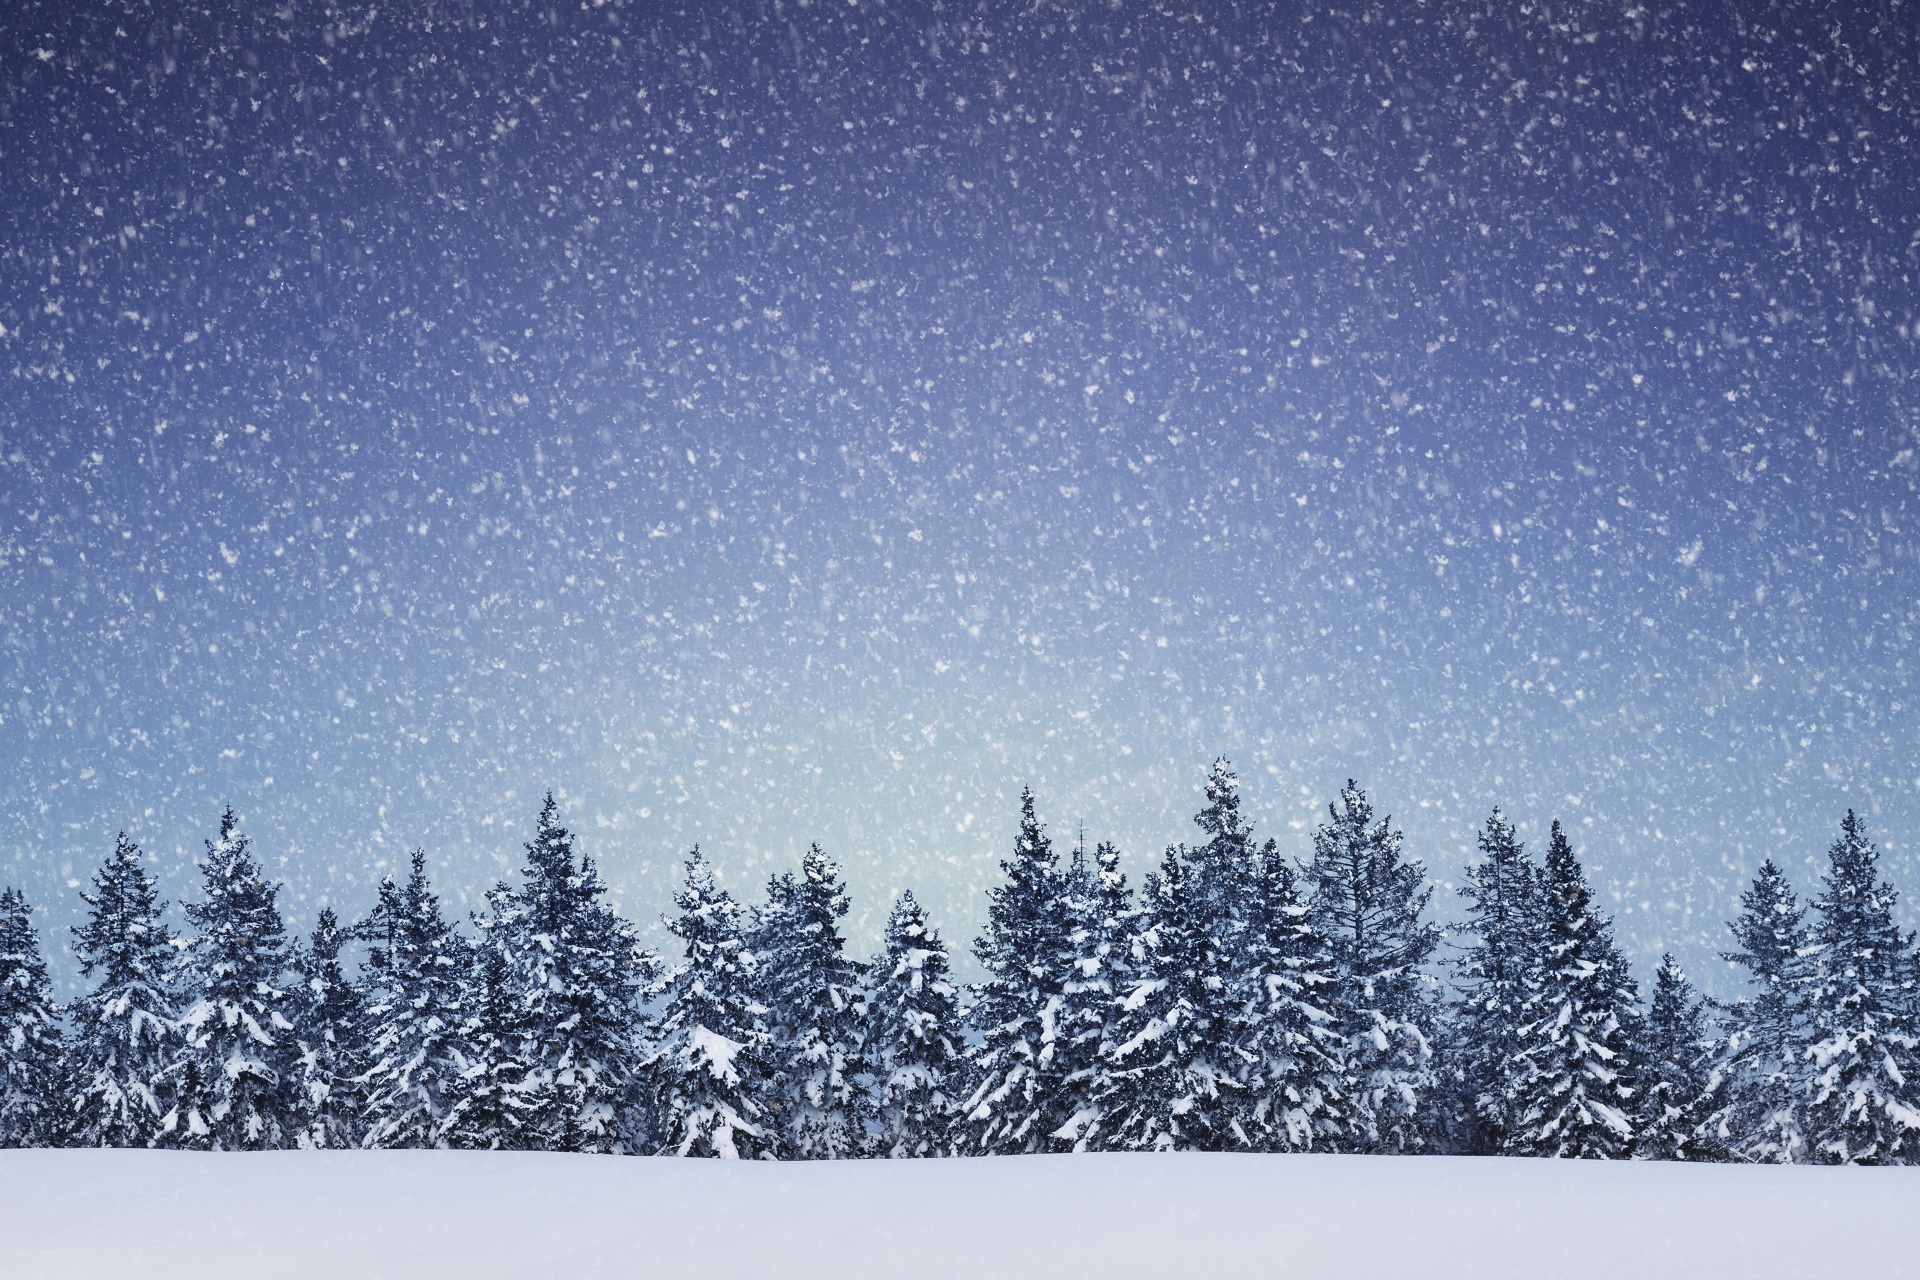 Скачать обои бесплатно Зима, Природа, Снег, Дерево, Снегопад, Земля/природа картинка на рабочий стол ПК